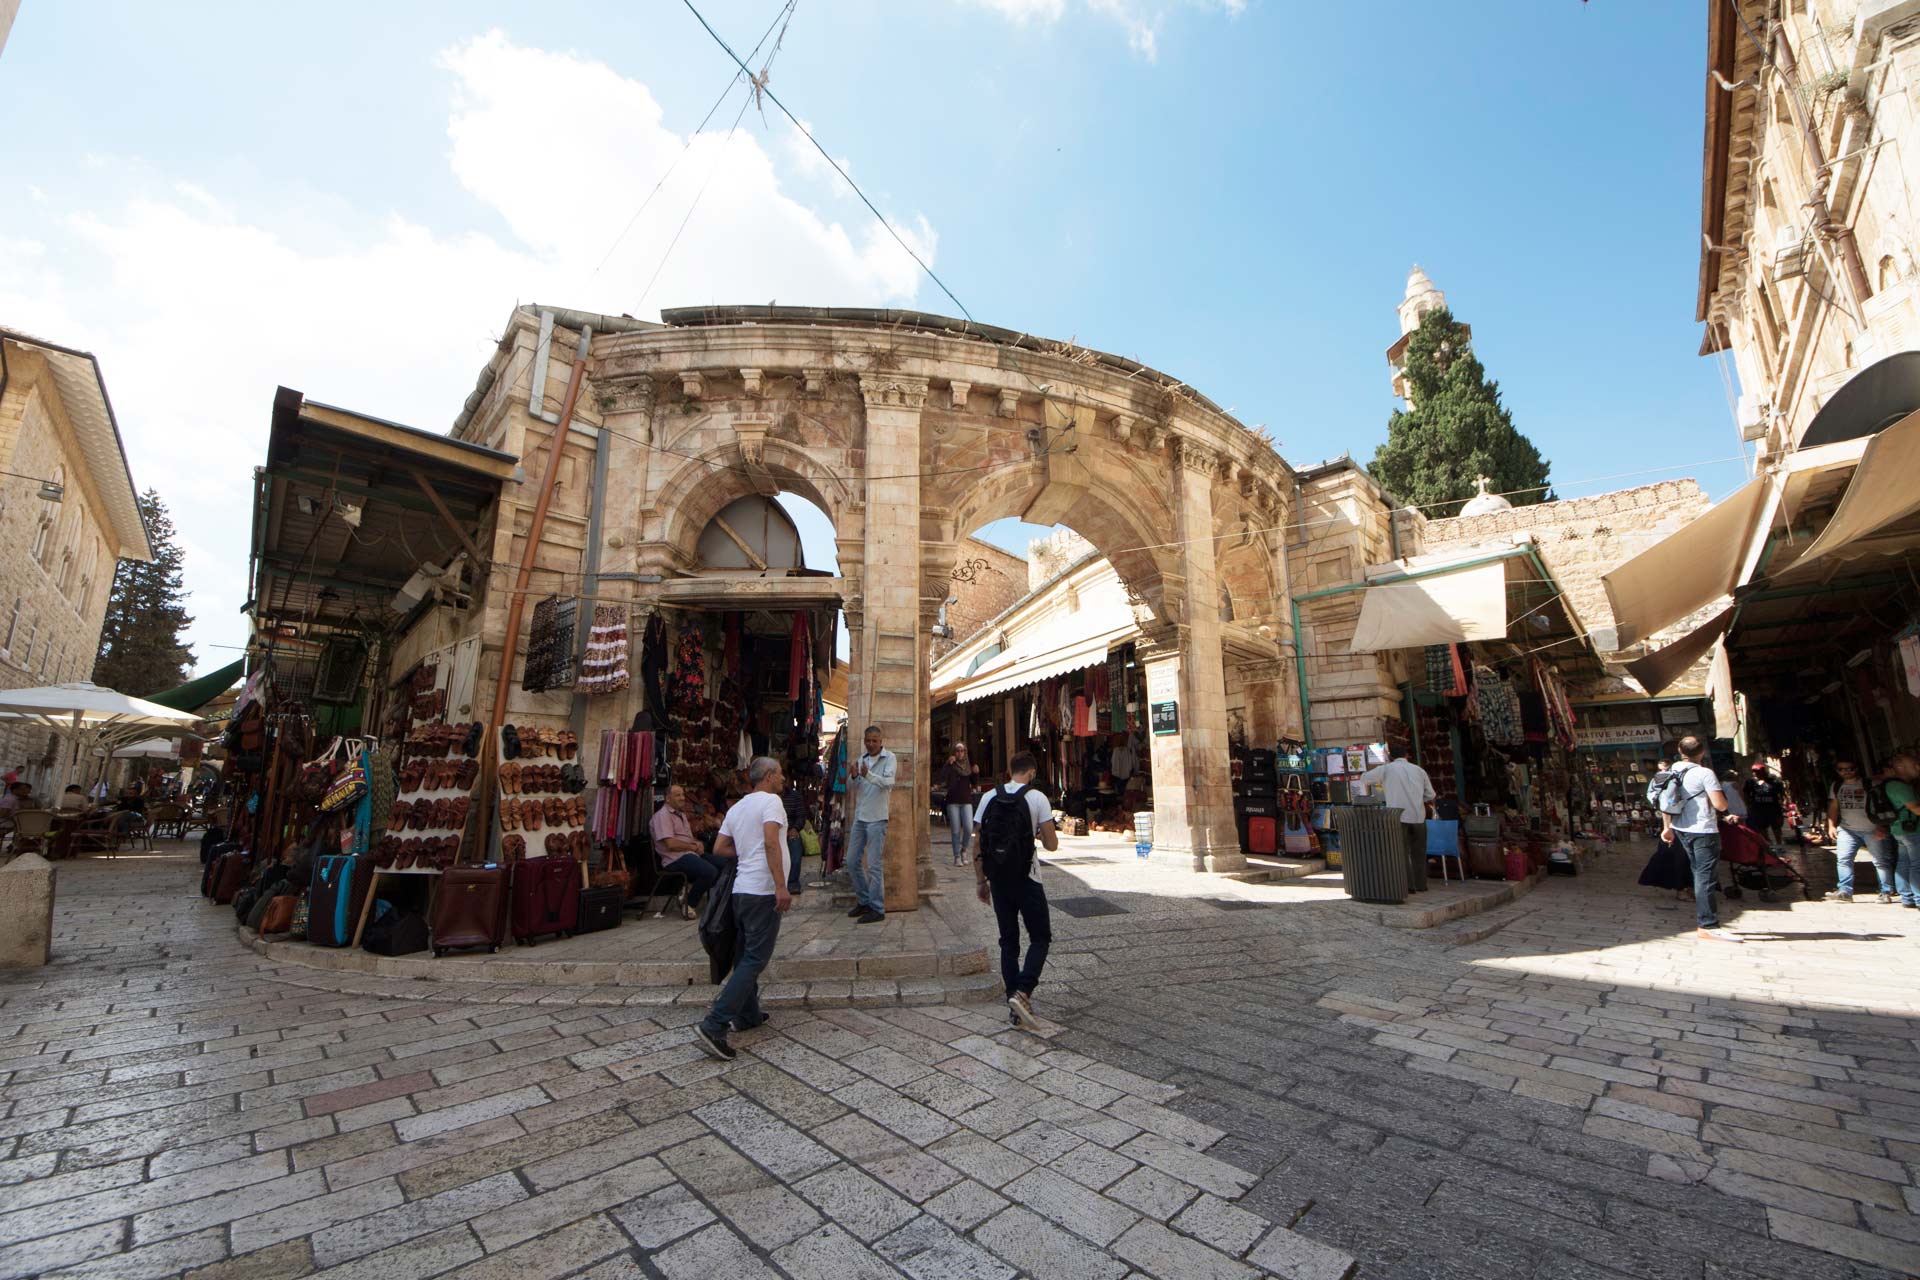 Market in the Christian Quarter, Jerusalem, Israel